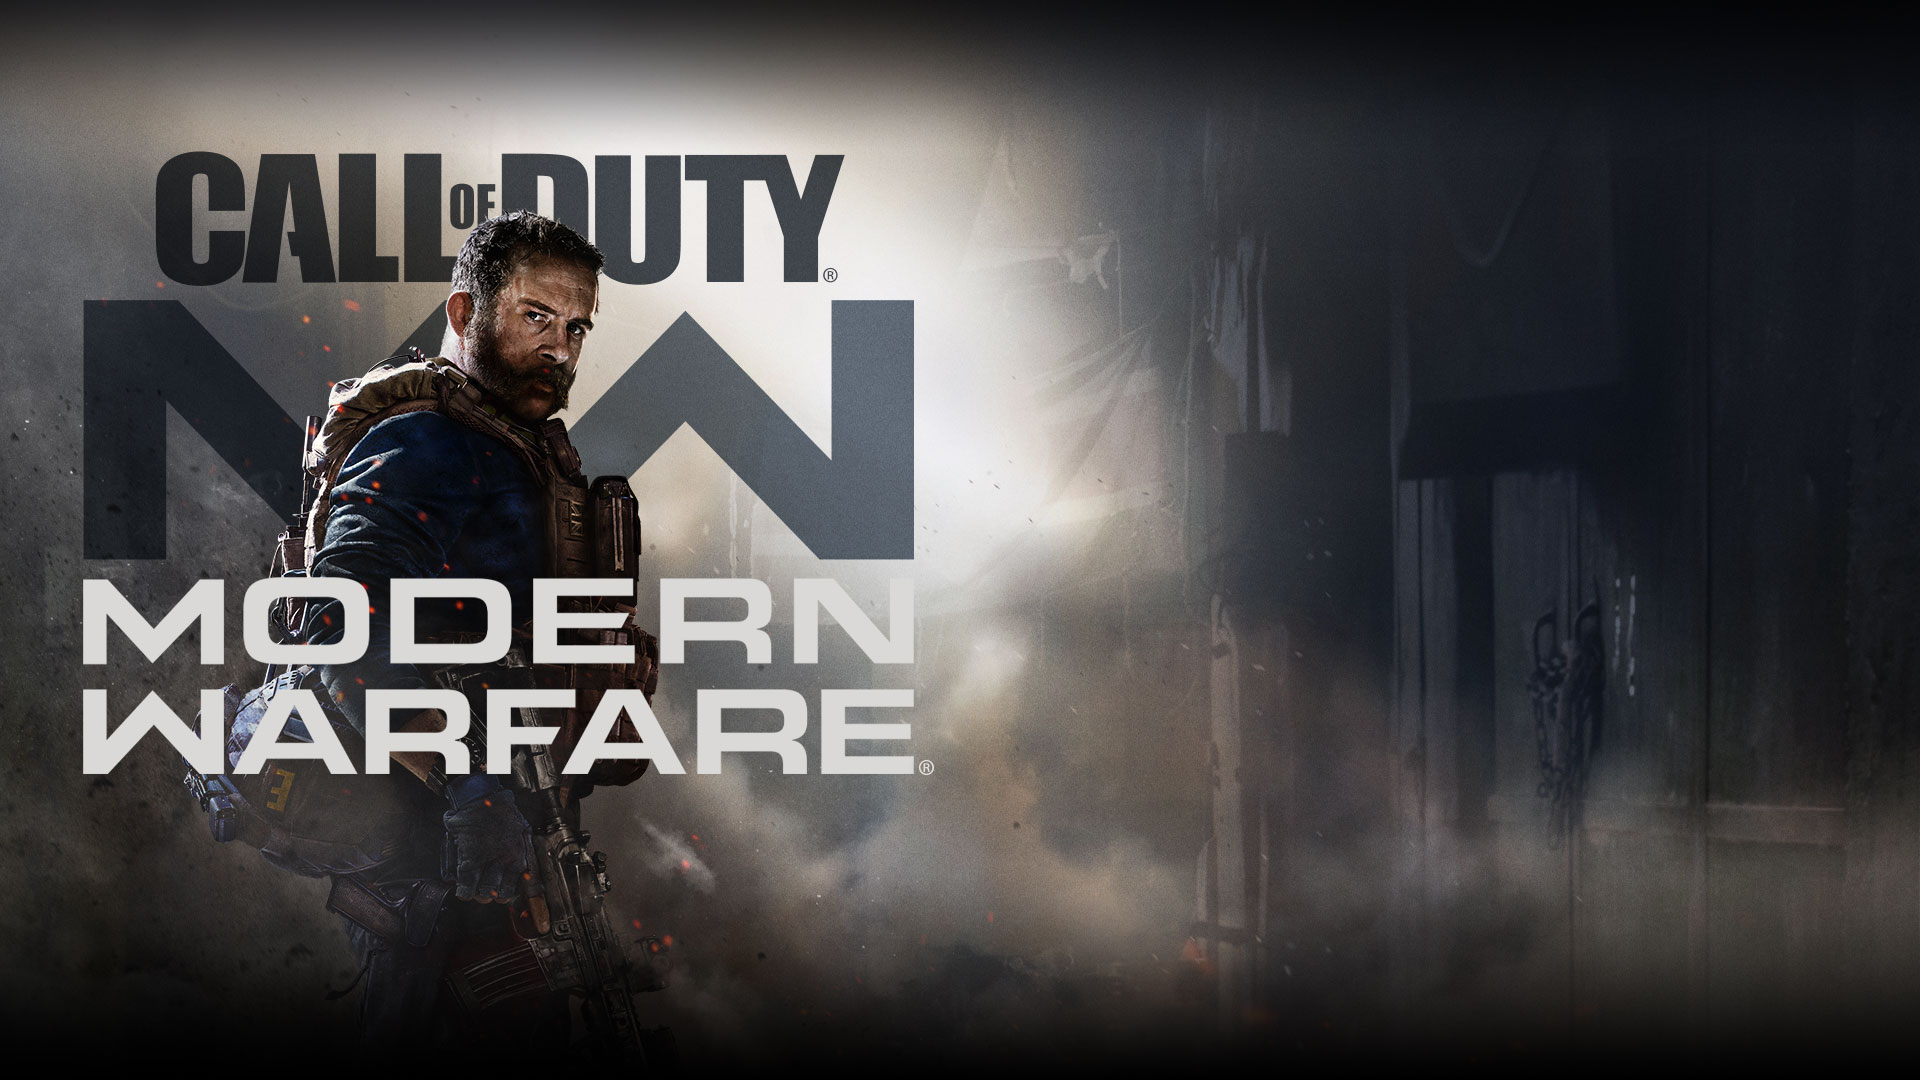 Λογότυπο του Call of Duty: Modern Warfare με τον χαρακτήρα Captain Price με μπλε ενδυμασία και στρατιωτικό γιλέκο